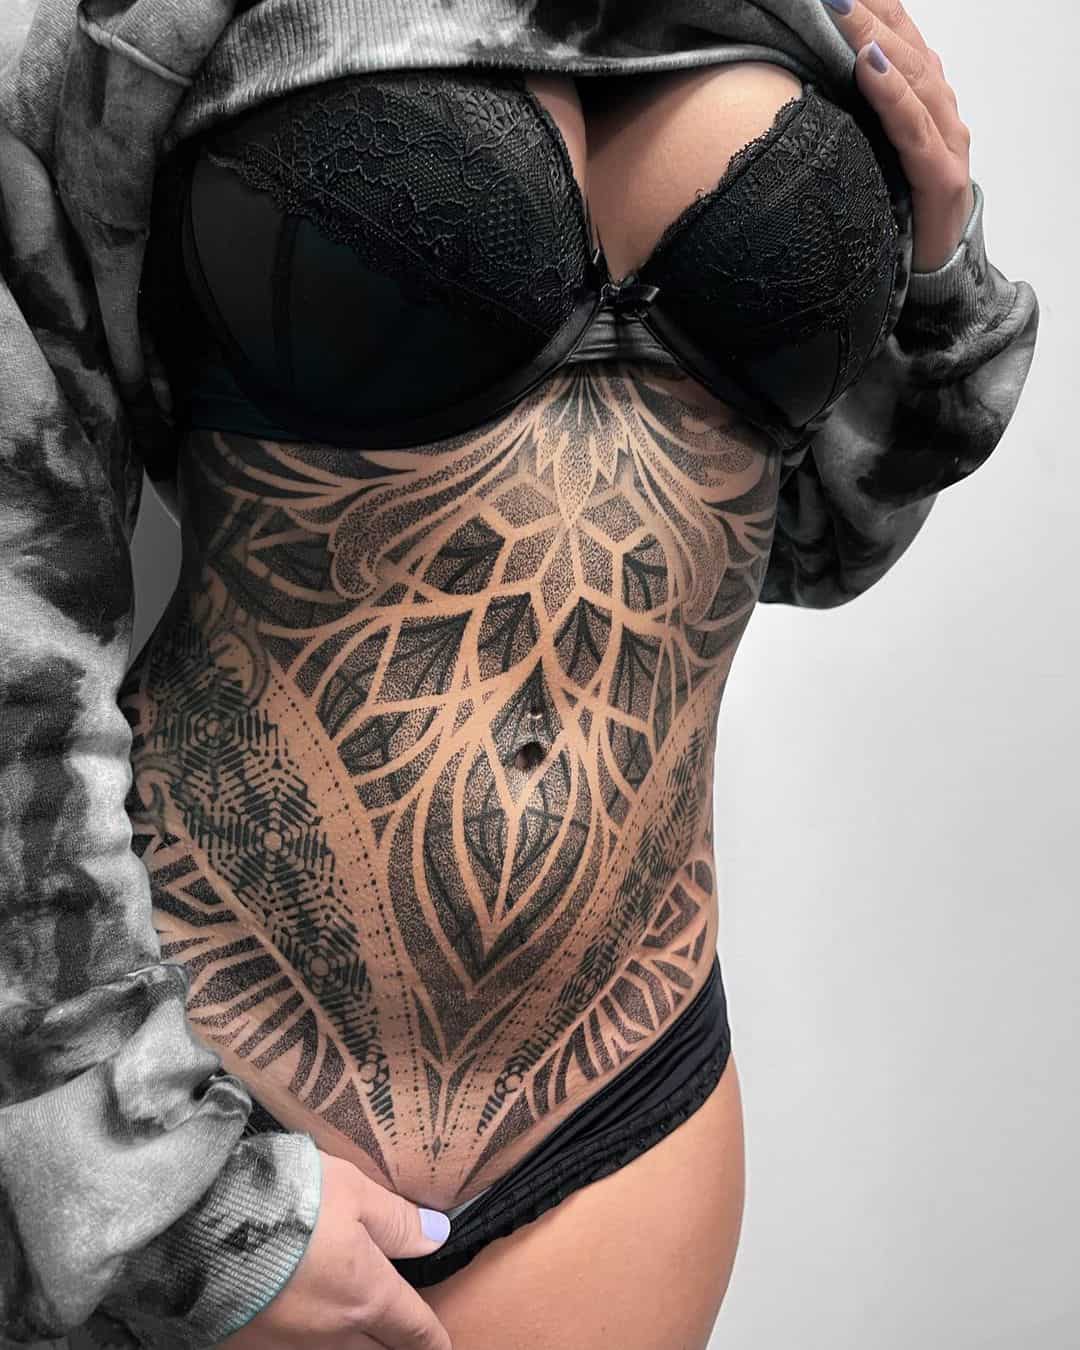 Dotwork tattoo for women by emanscorfna